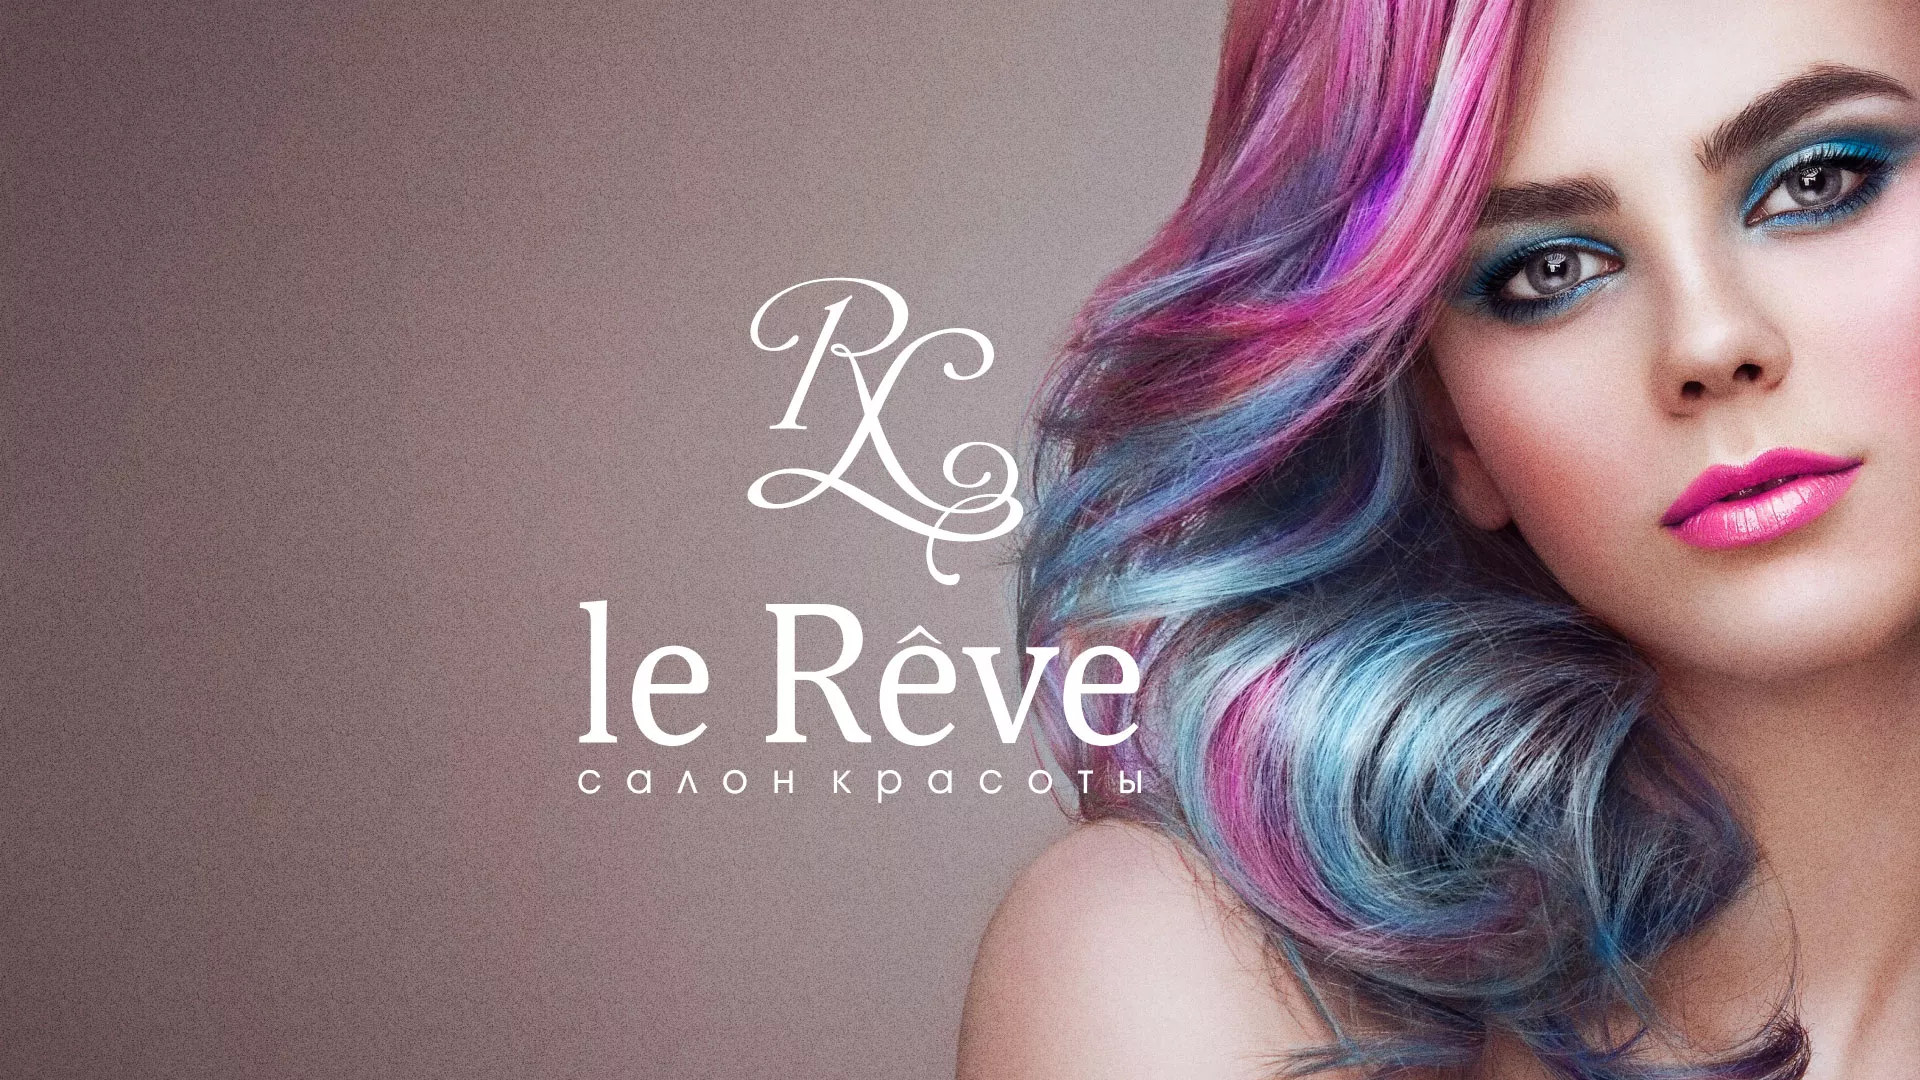 Создание сайта для салона красоты «Le Reve» в Железногорске-Илимском